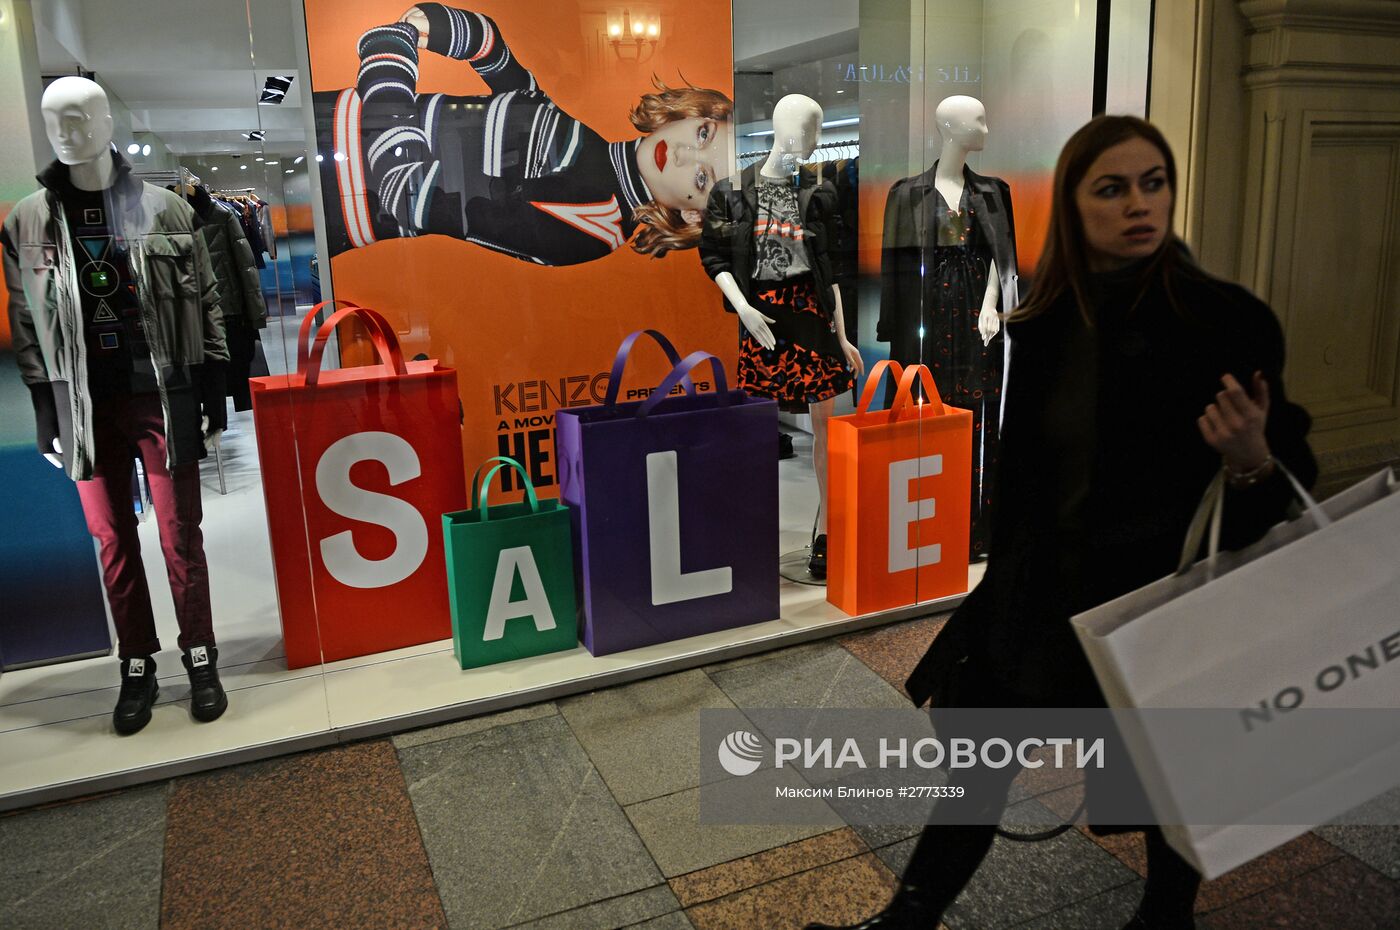 Распродажи в московских магазинах